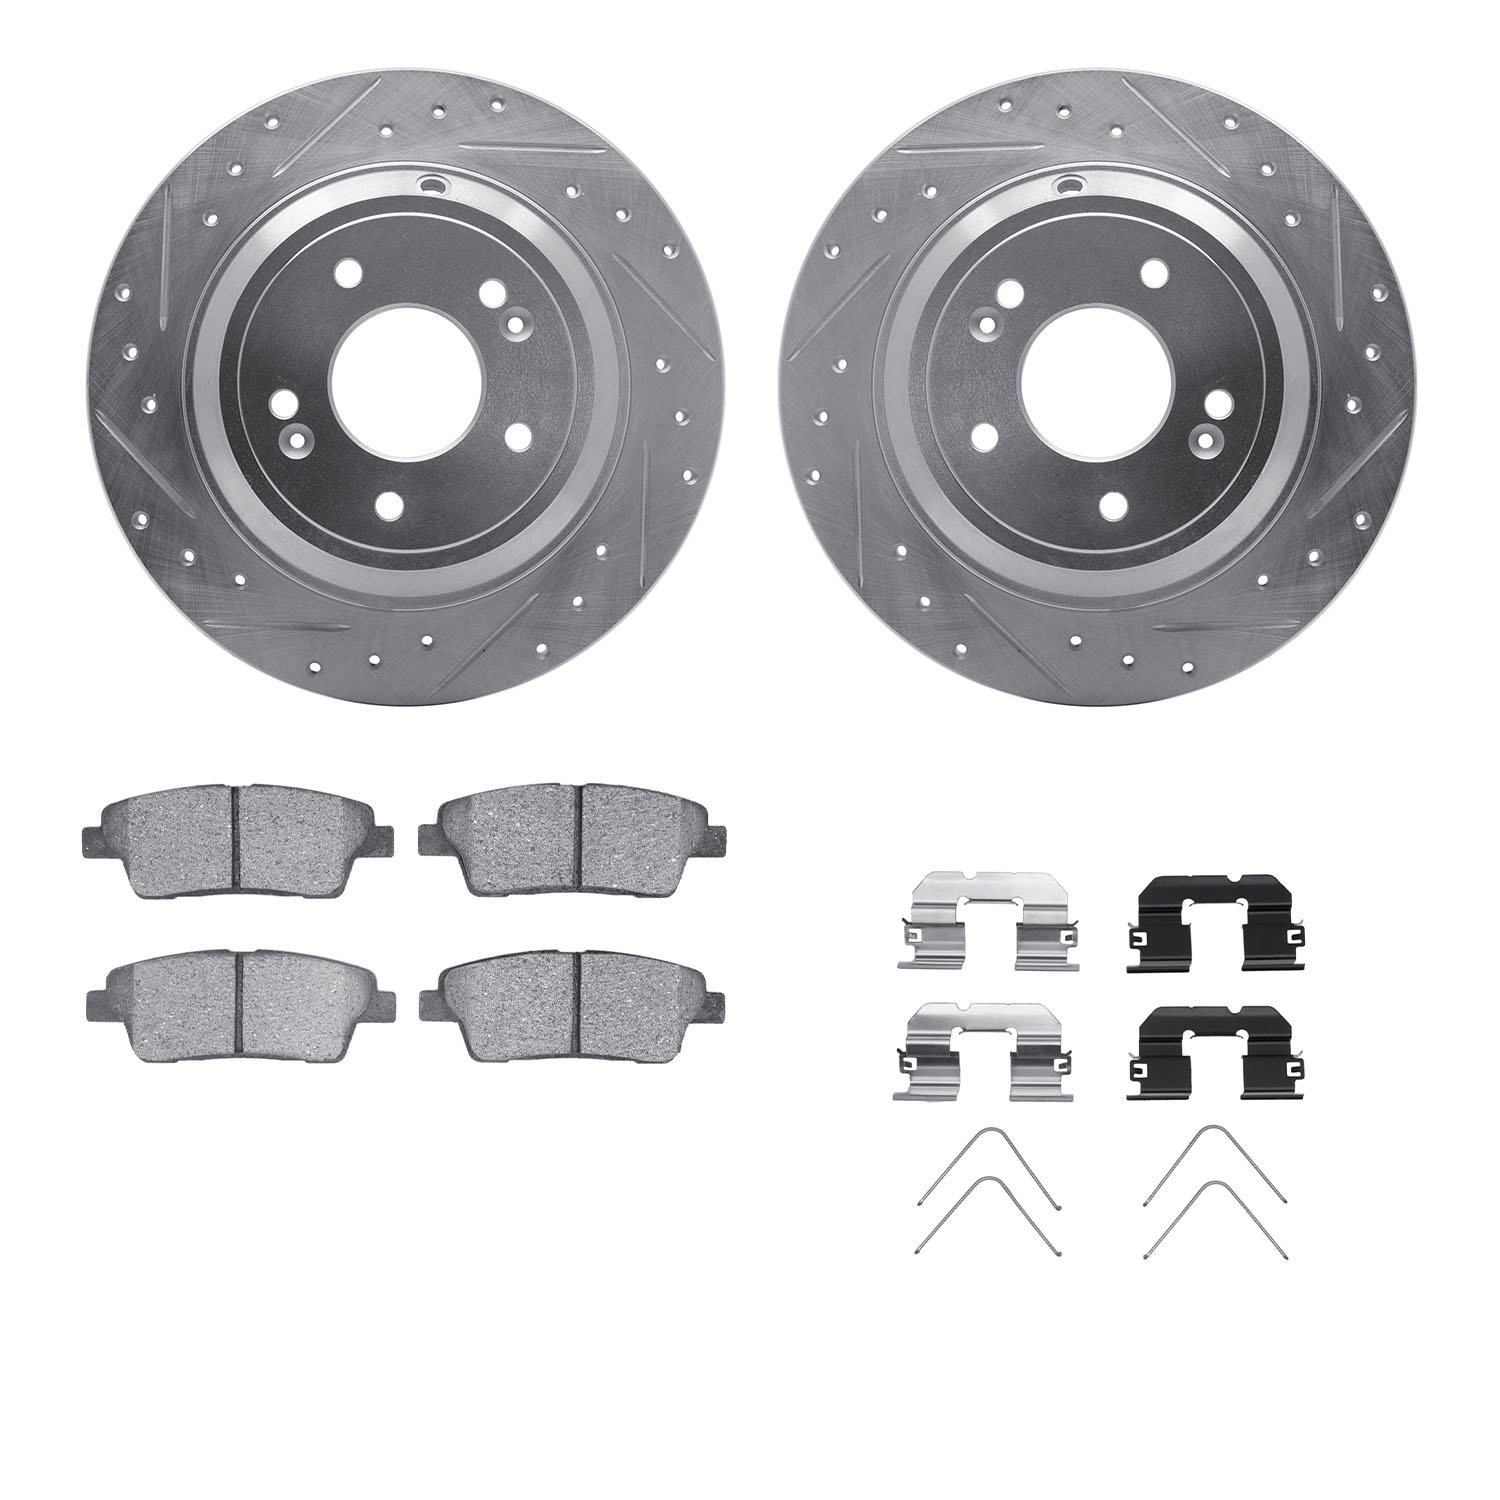 7312-03103 Drilled/Slotted Brake Rotor with 3000-Series Ceramic Brake Pads Kit & Hardware [Silver], 2018-2020 Kia/Hyundai/Genesi